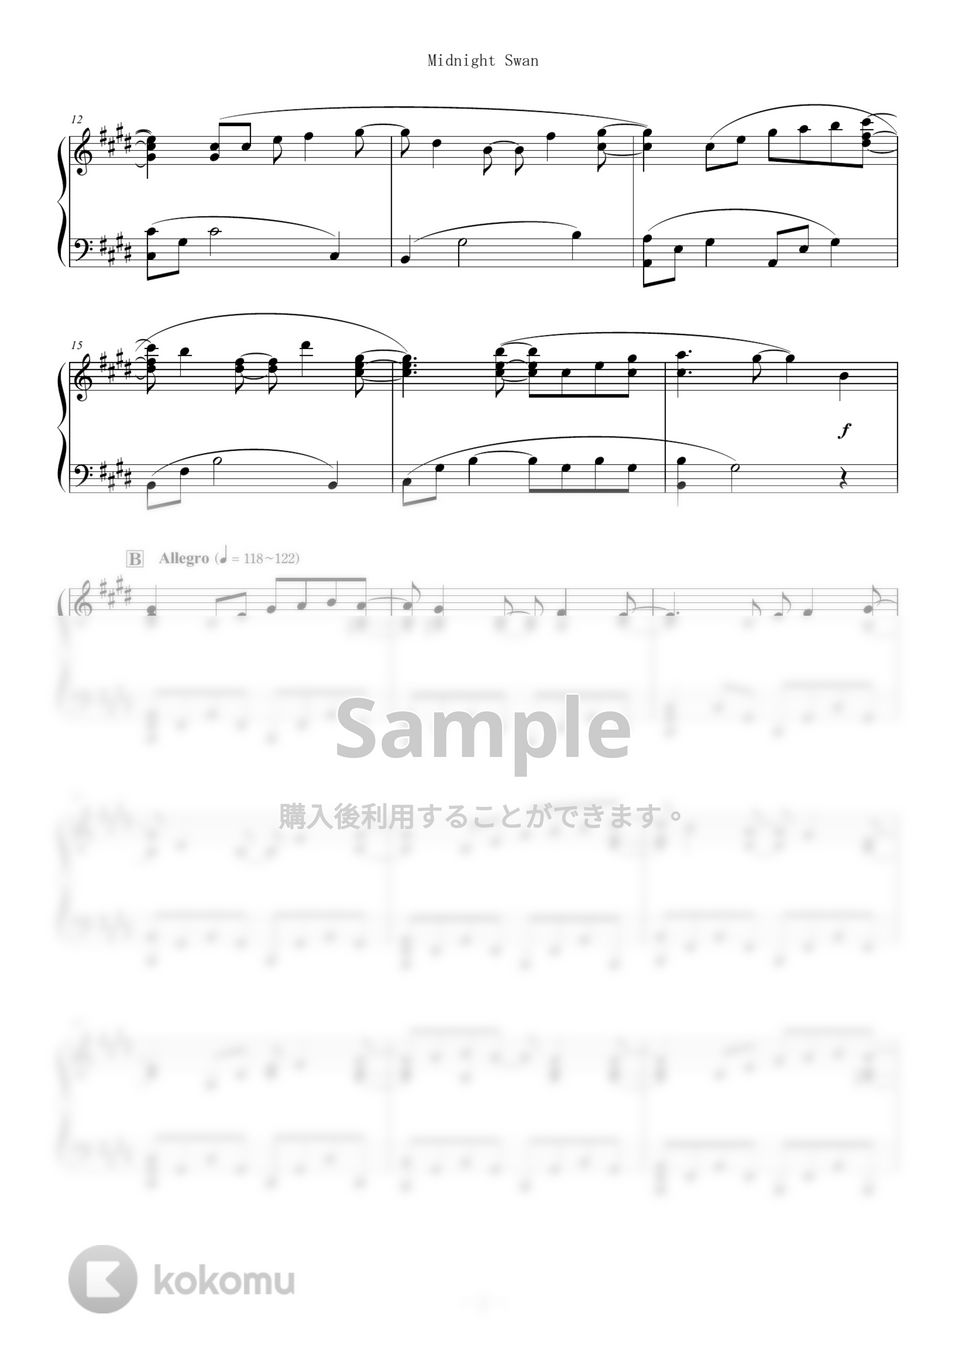 渋谷慶一郎 - Midnight Swan (難易度：★★★★☆/映画「ミッドナイトスワン」主題歌) by Dさん